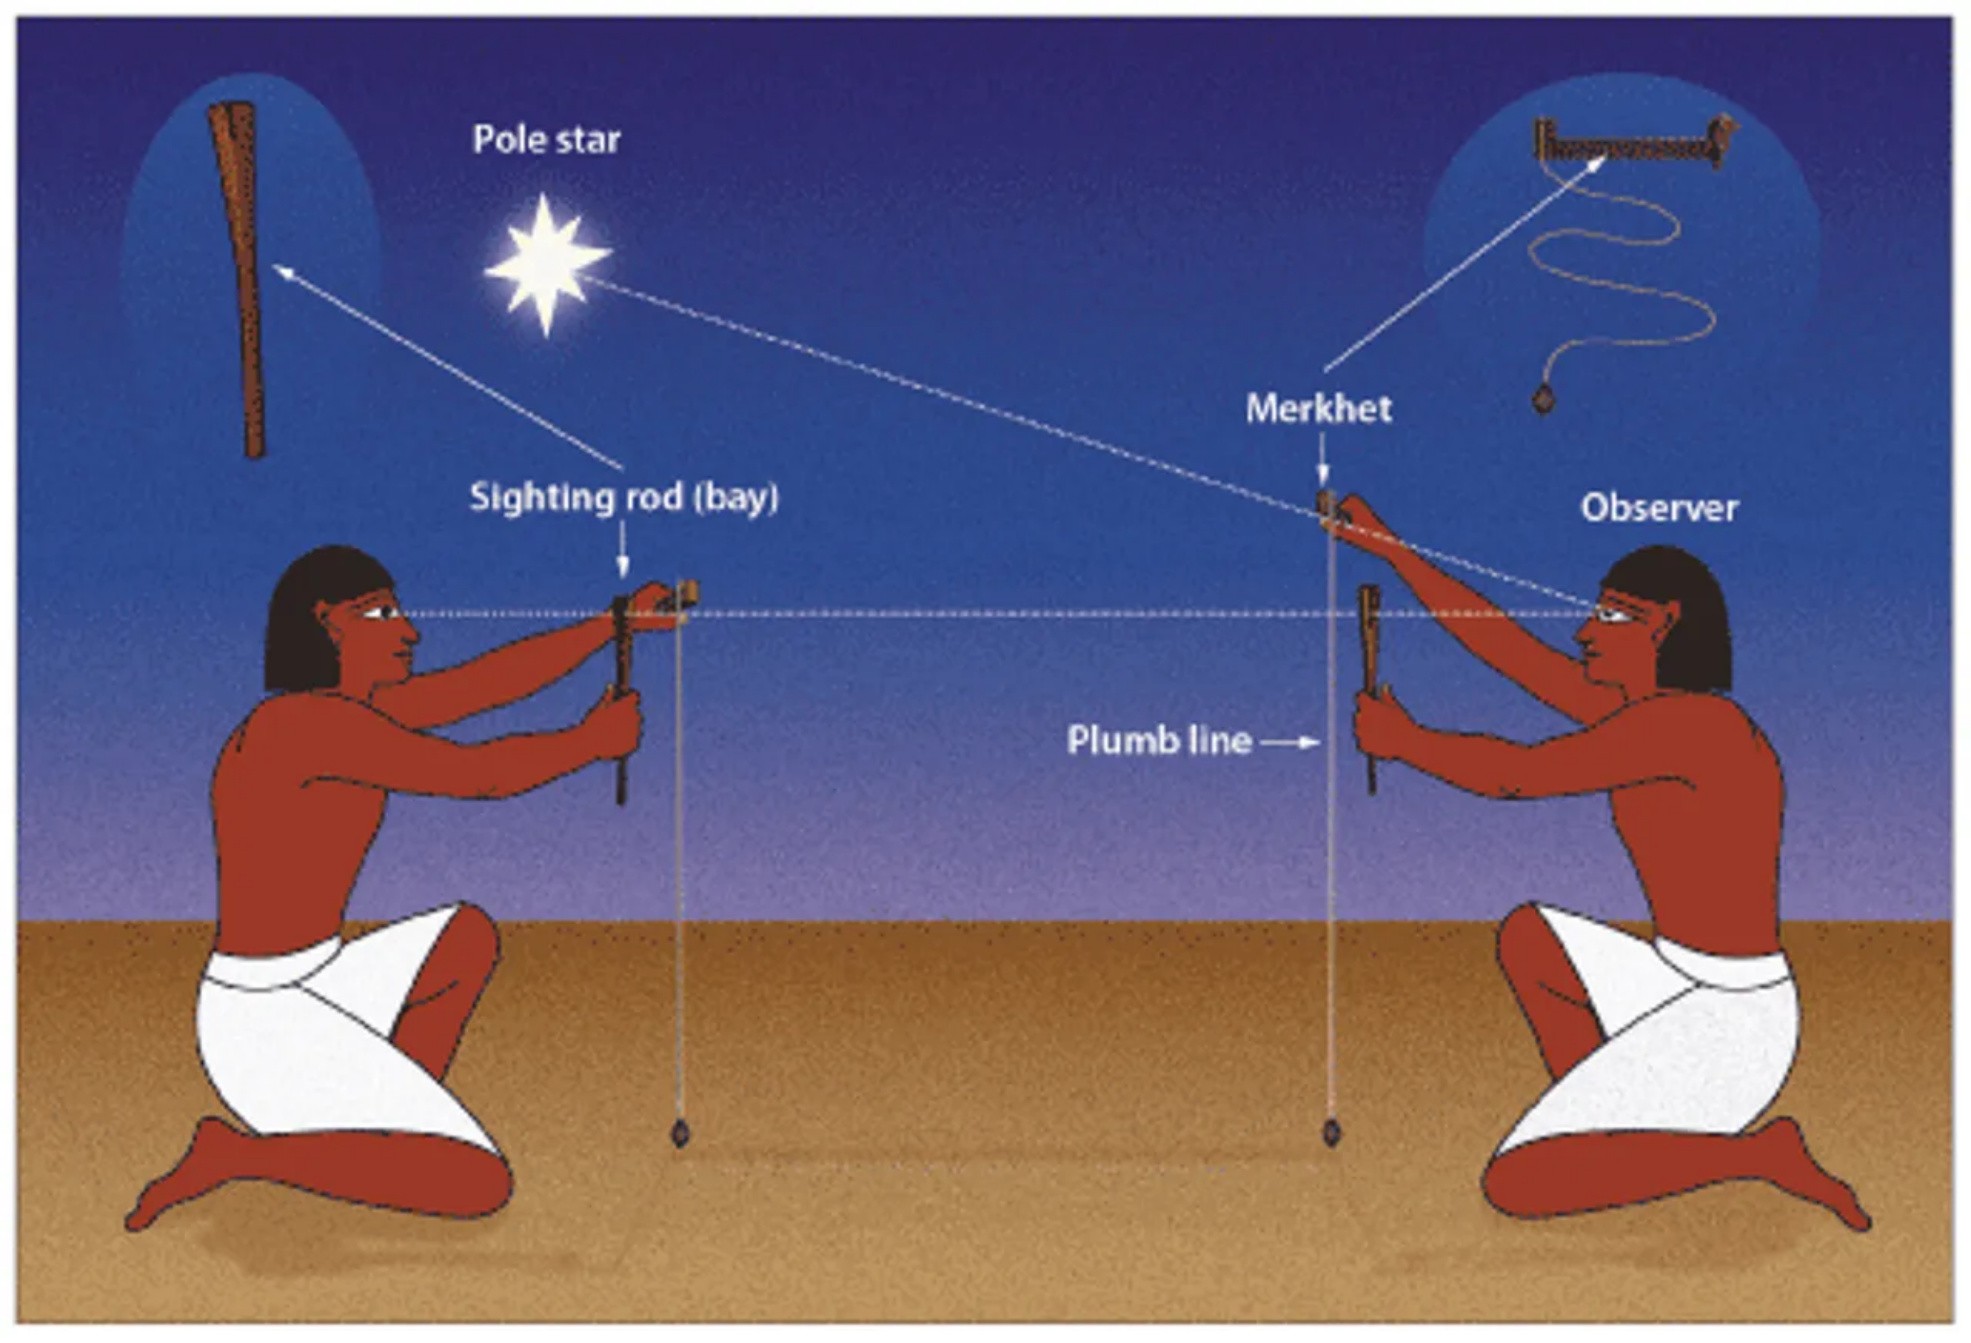 Orologio ombra egiziano portatile Merkhet che permetteva di dire l'ora quando il sole era tramontato.